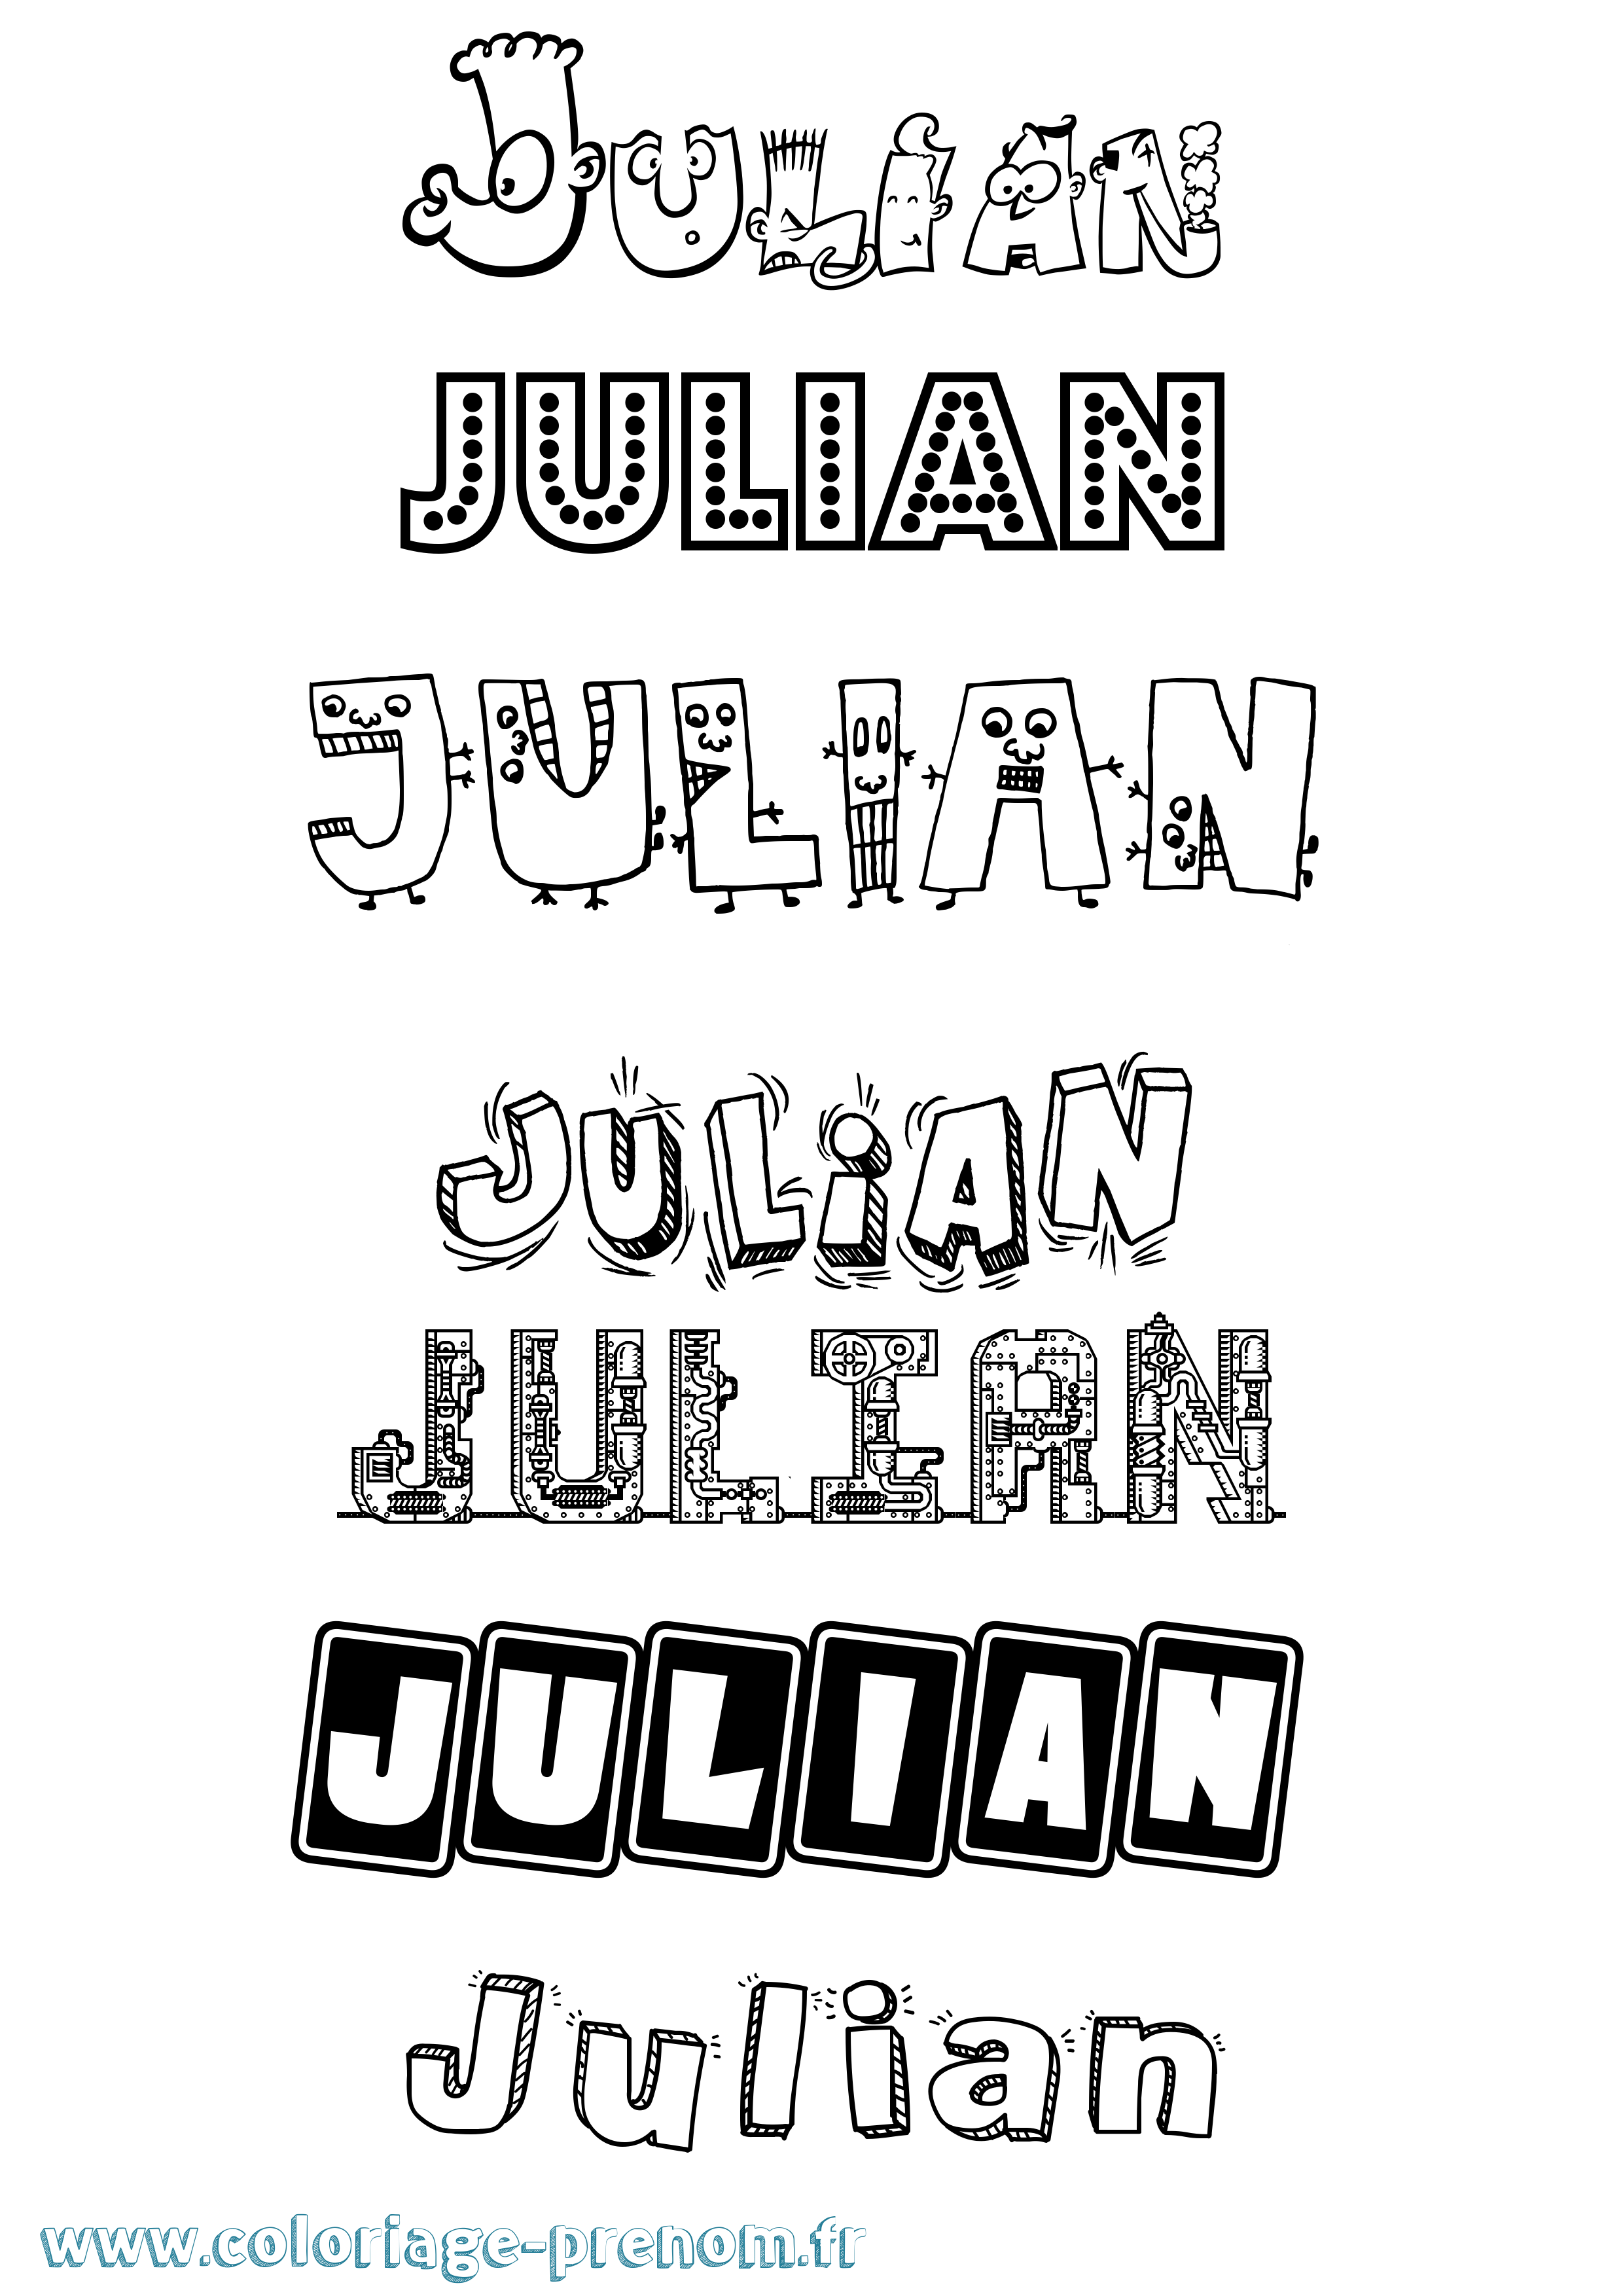 Coloriage prénom Julian